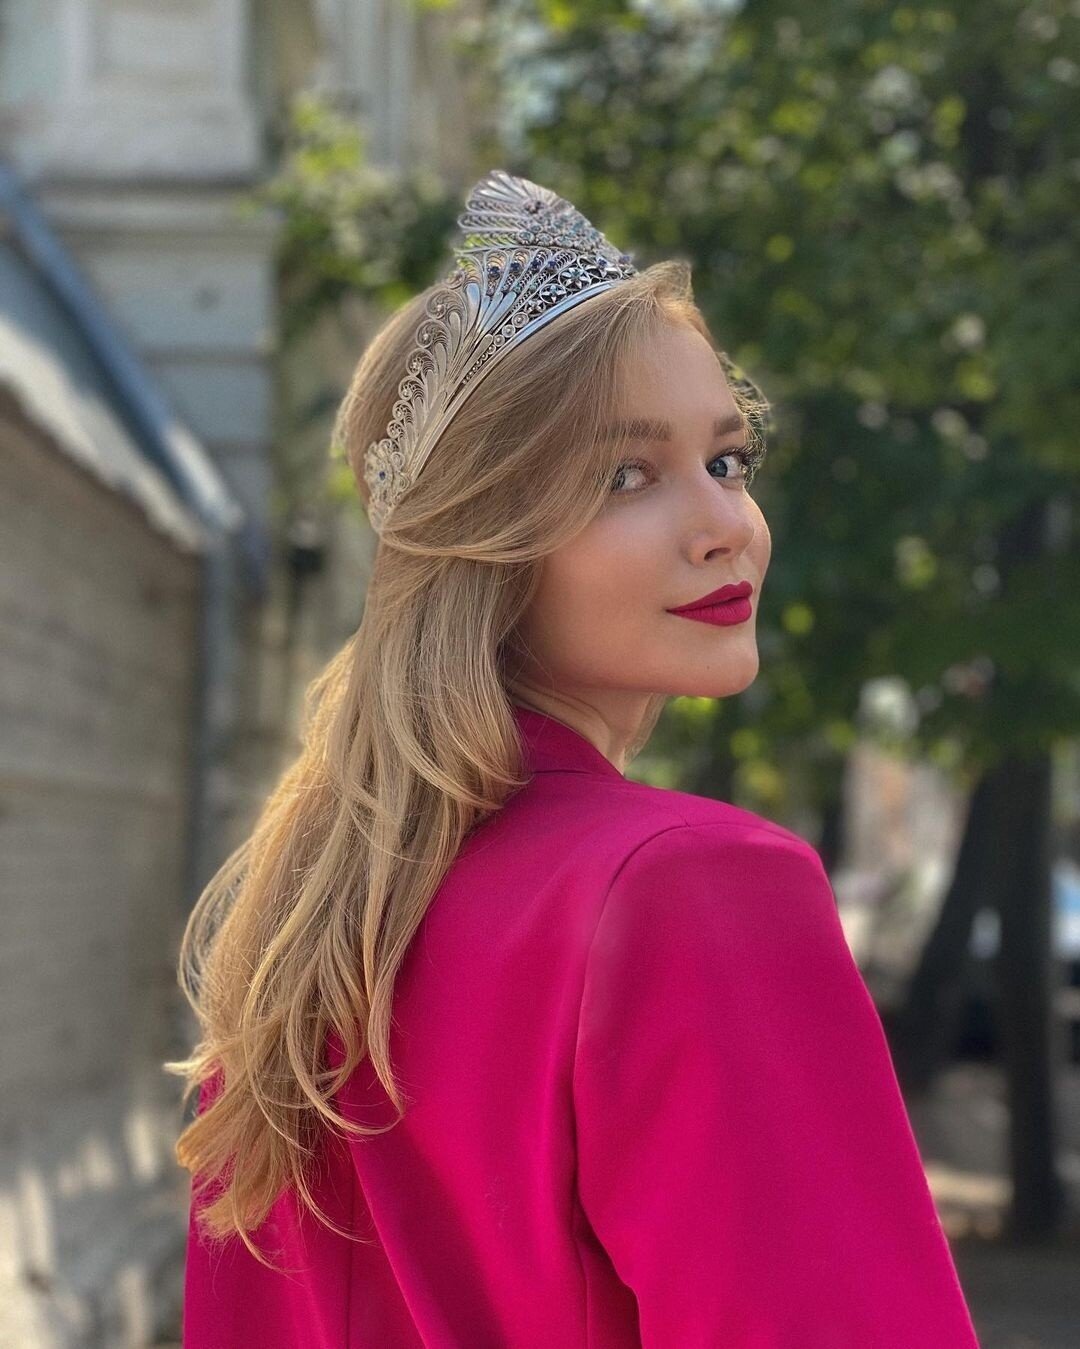 Встречаем новую «Мисс Россия» - любительницу роскоши и мужчин Анну Линникову, а также смотрим на остальных участниц конкурса